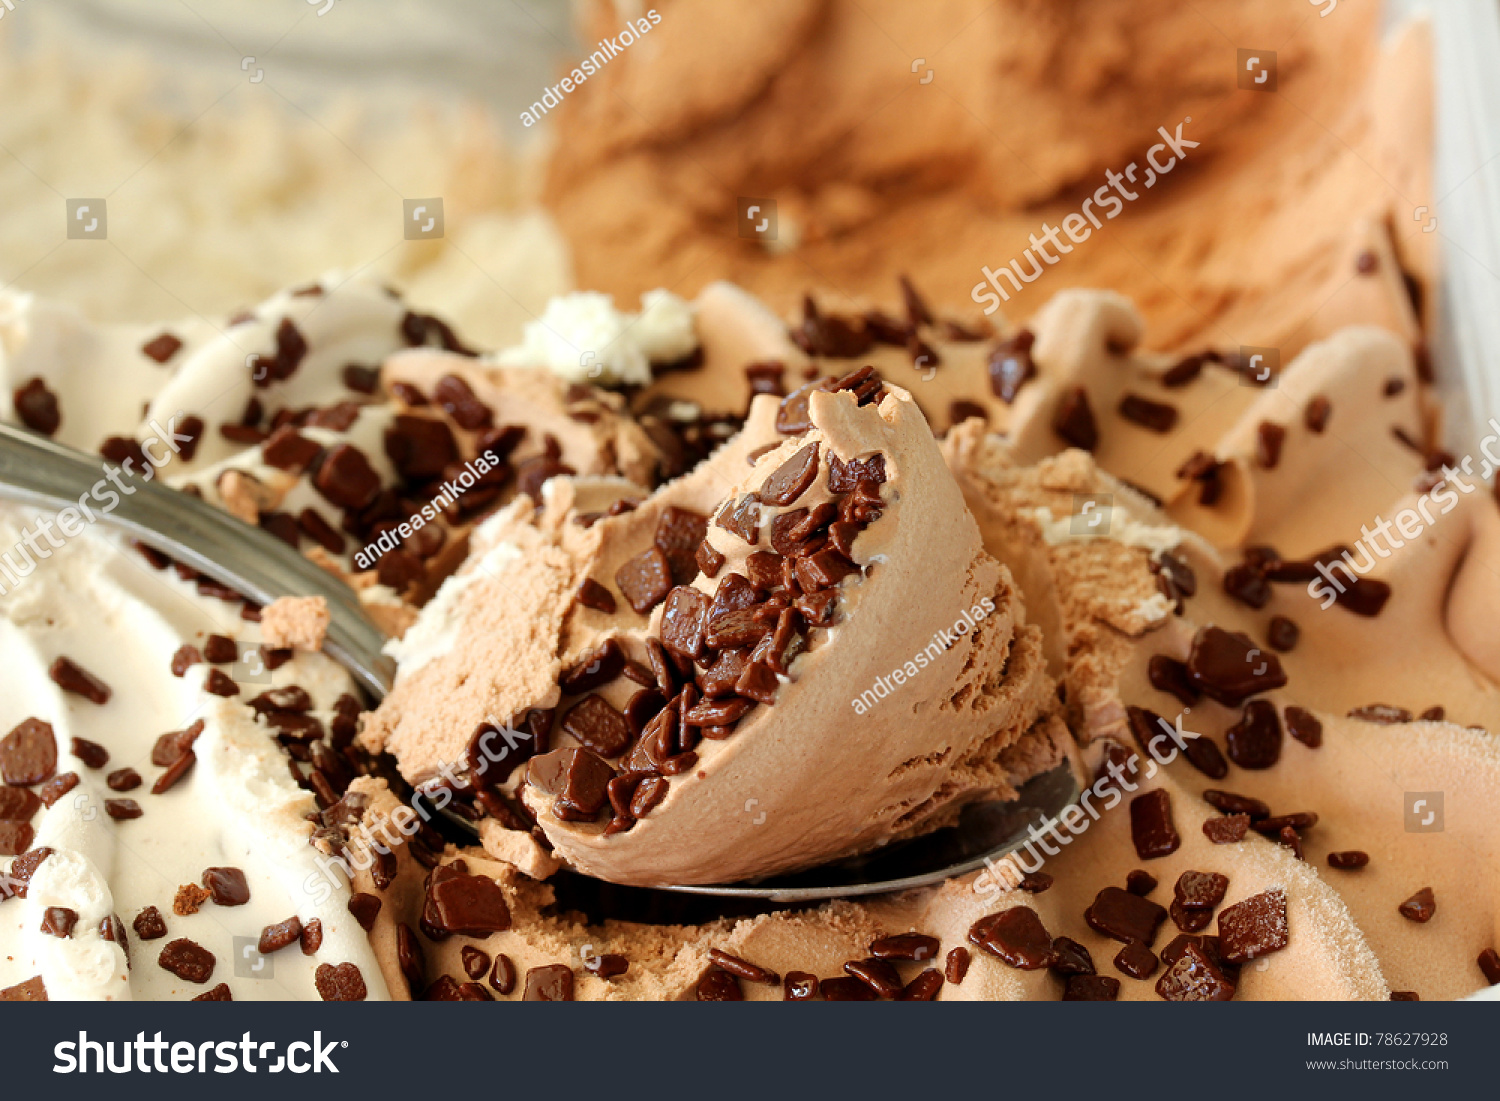 Ice cream in container.Ice cream close-up #78627928